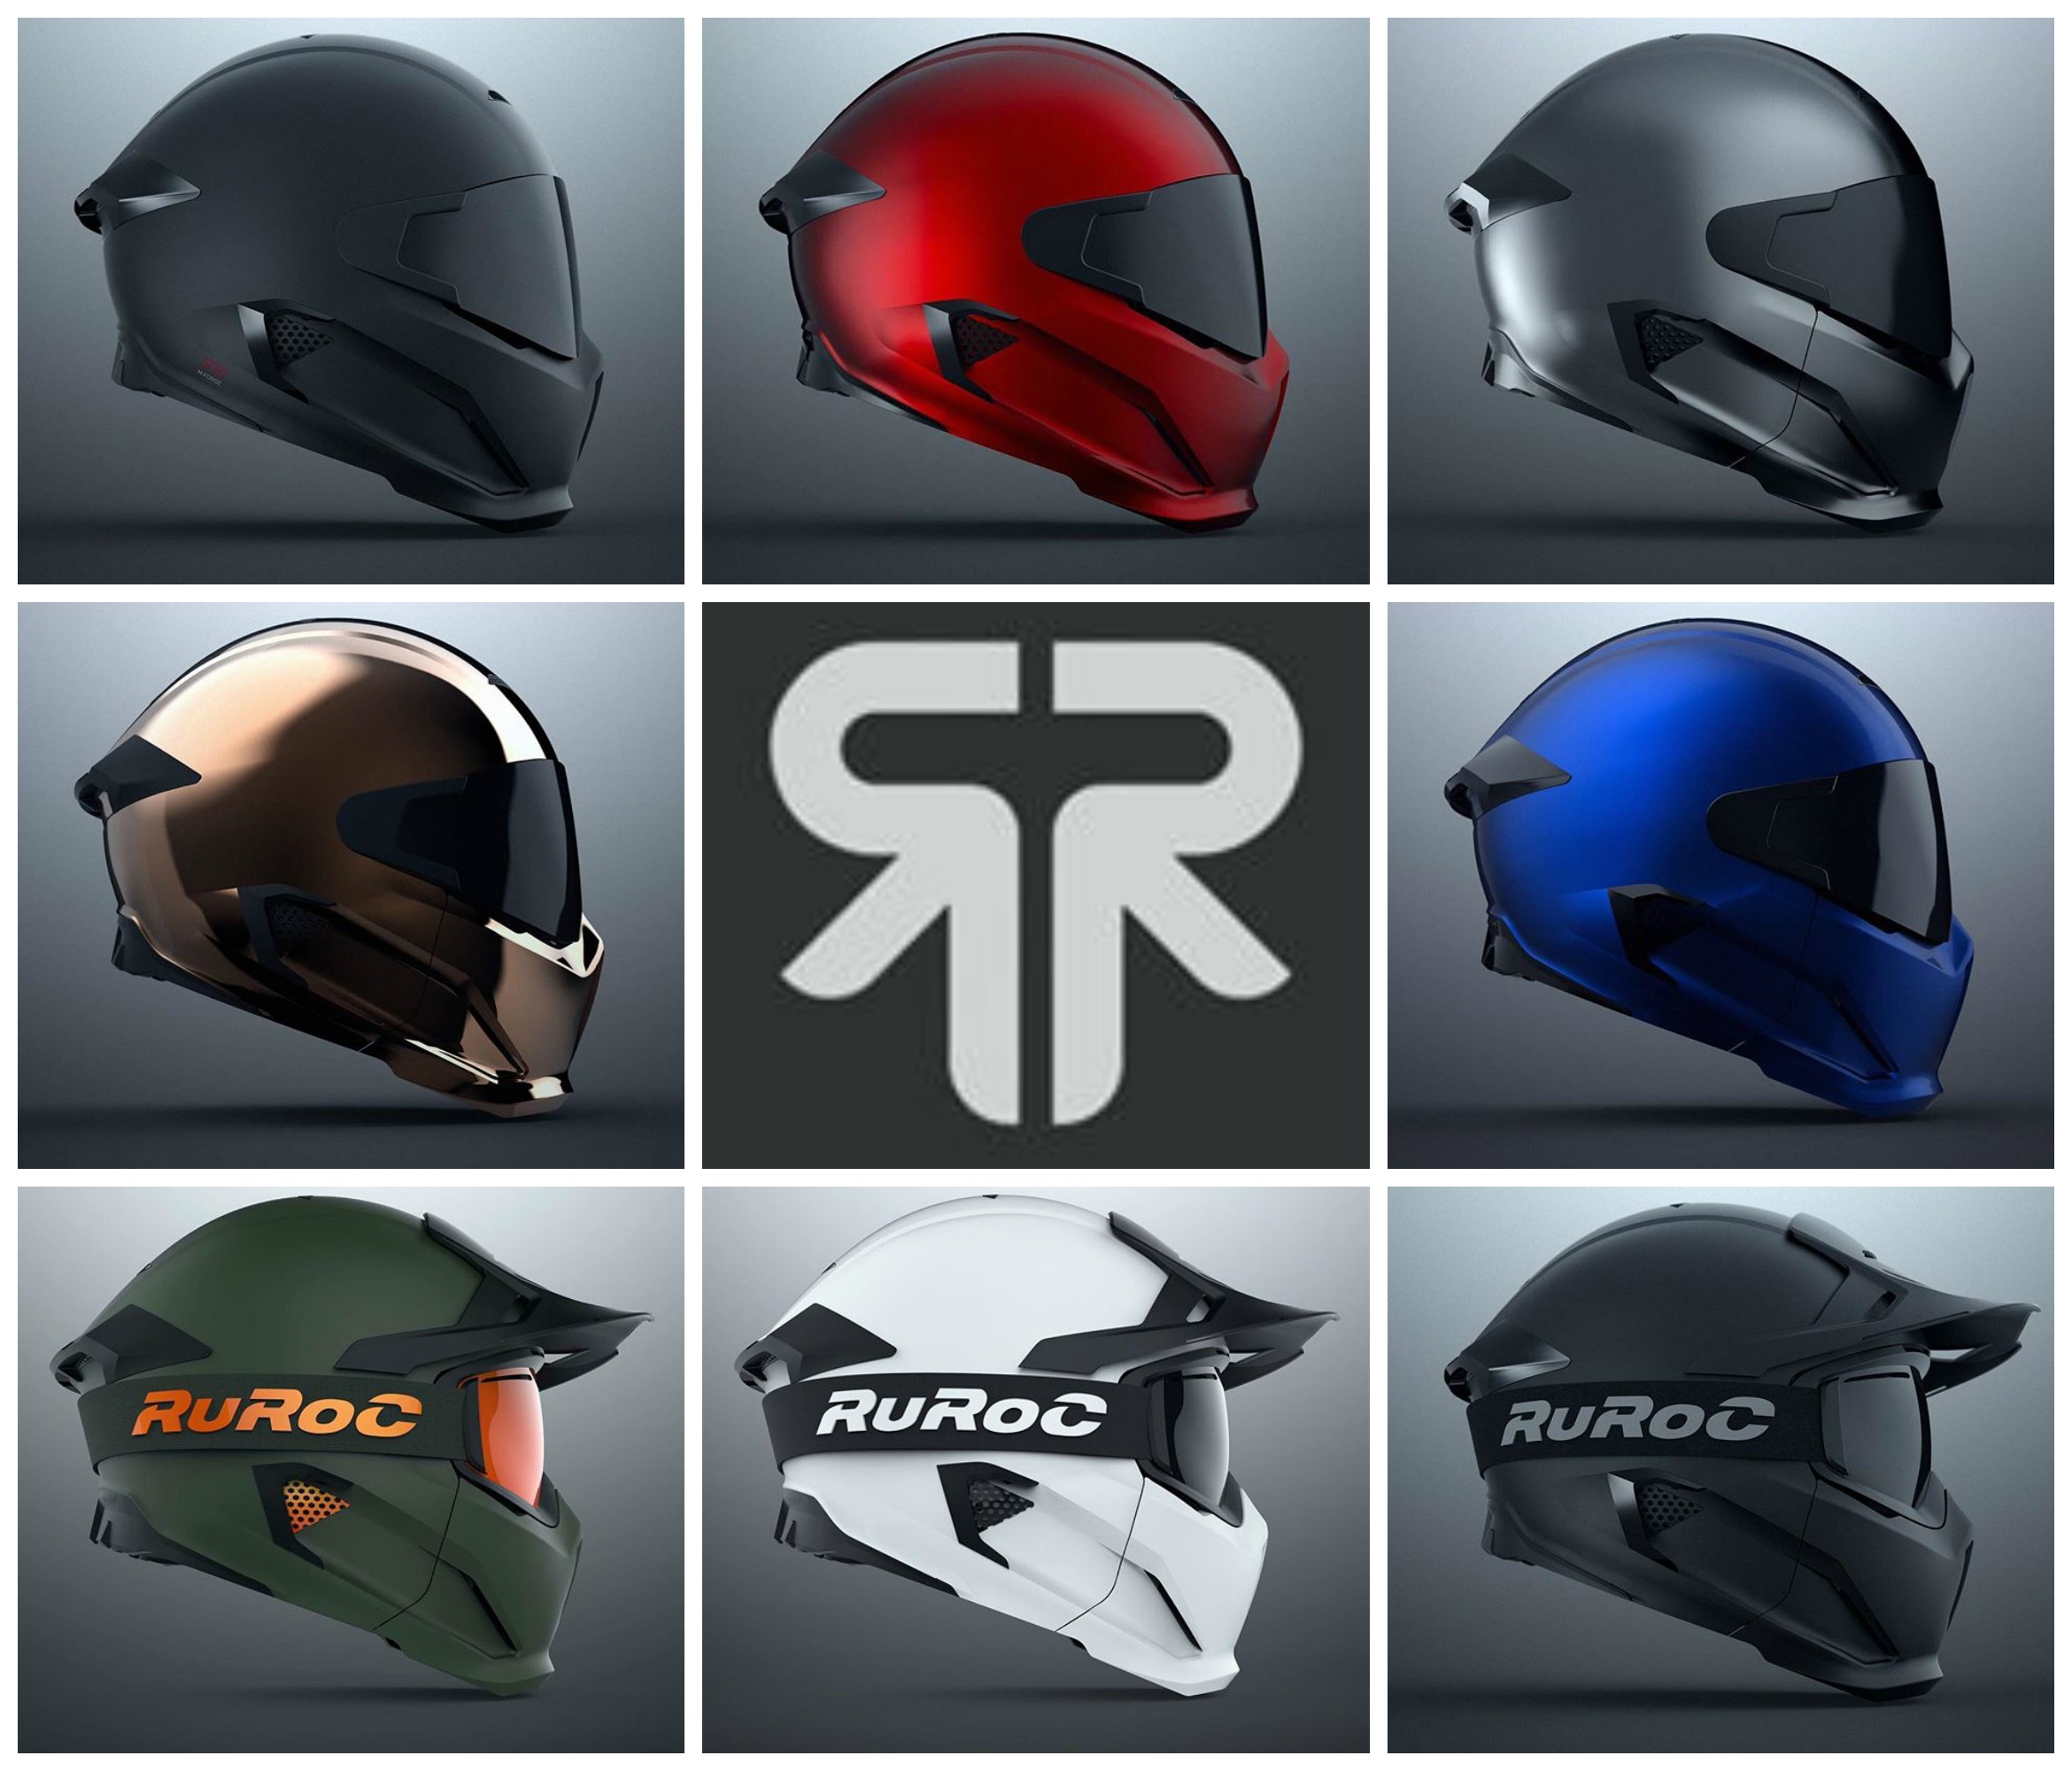 Ruroc Motorcycle Helmet